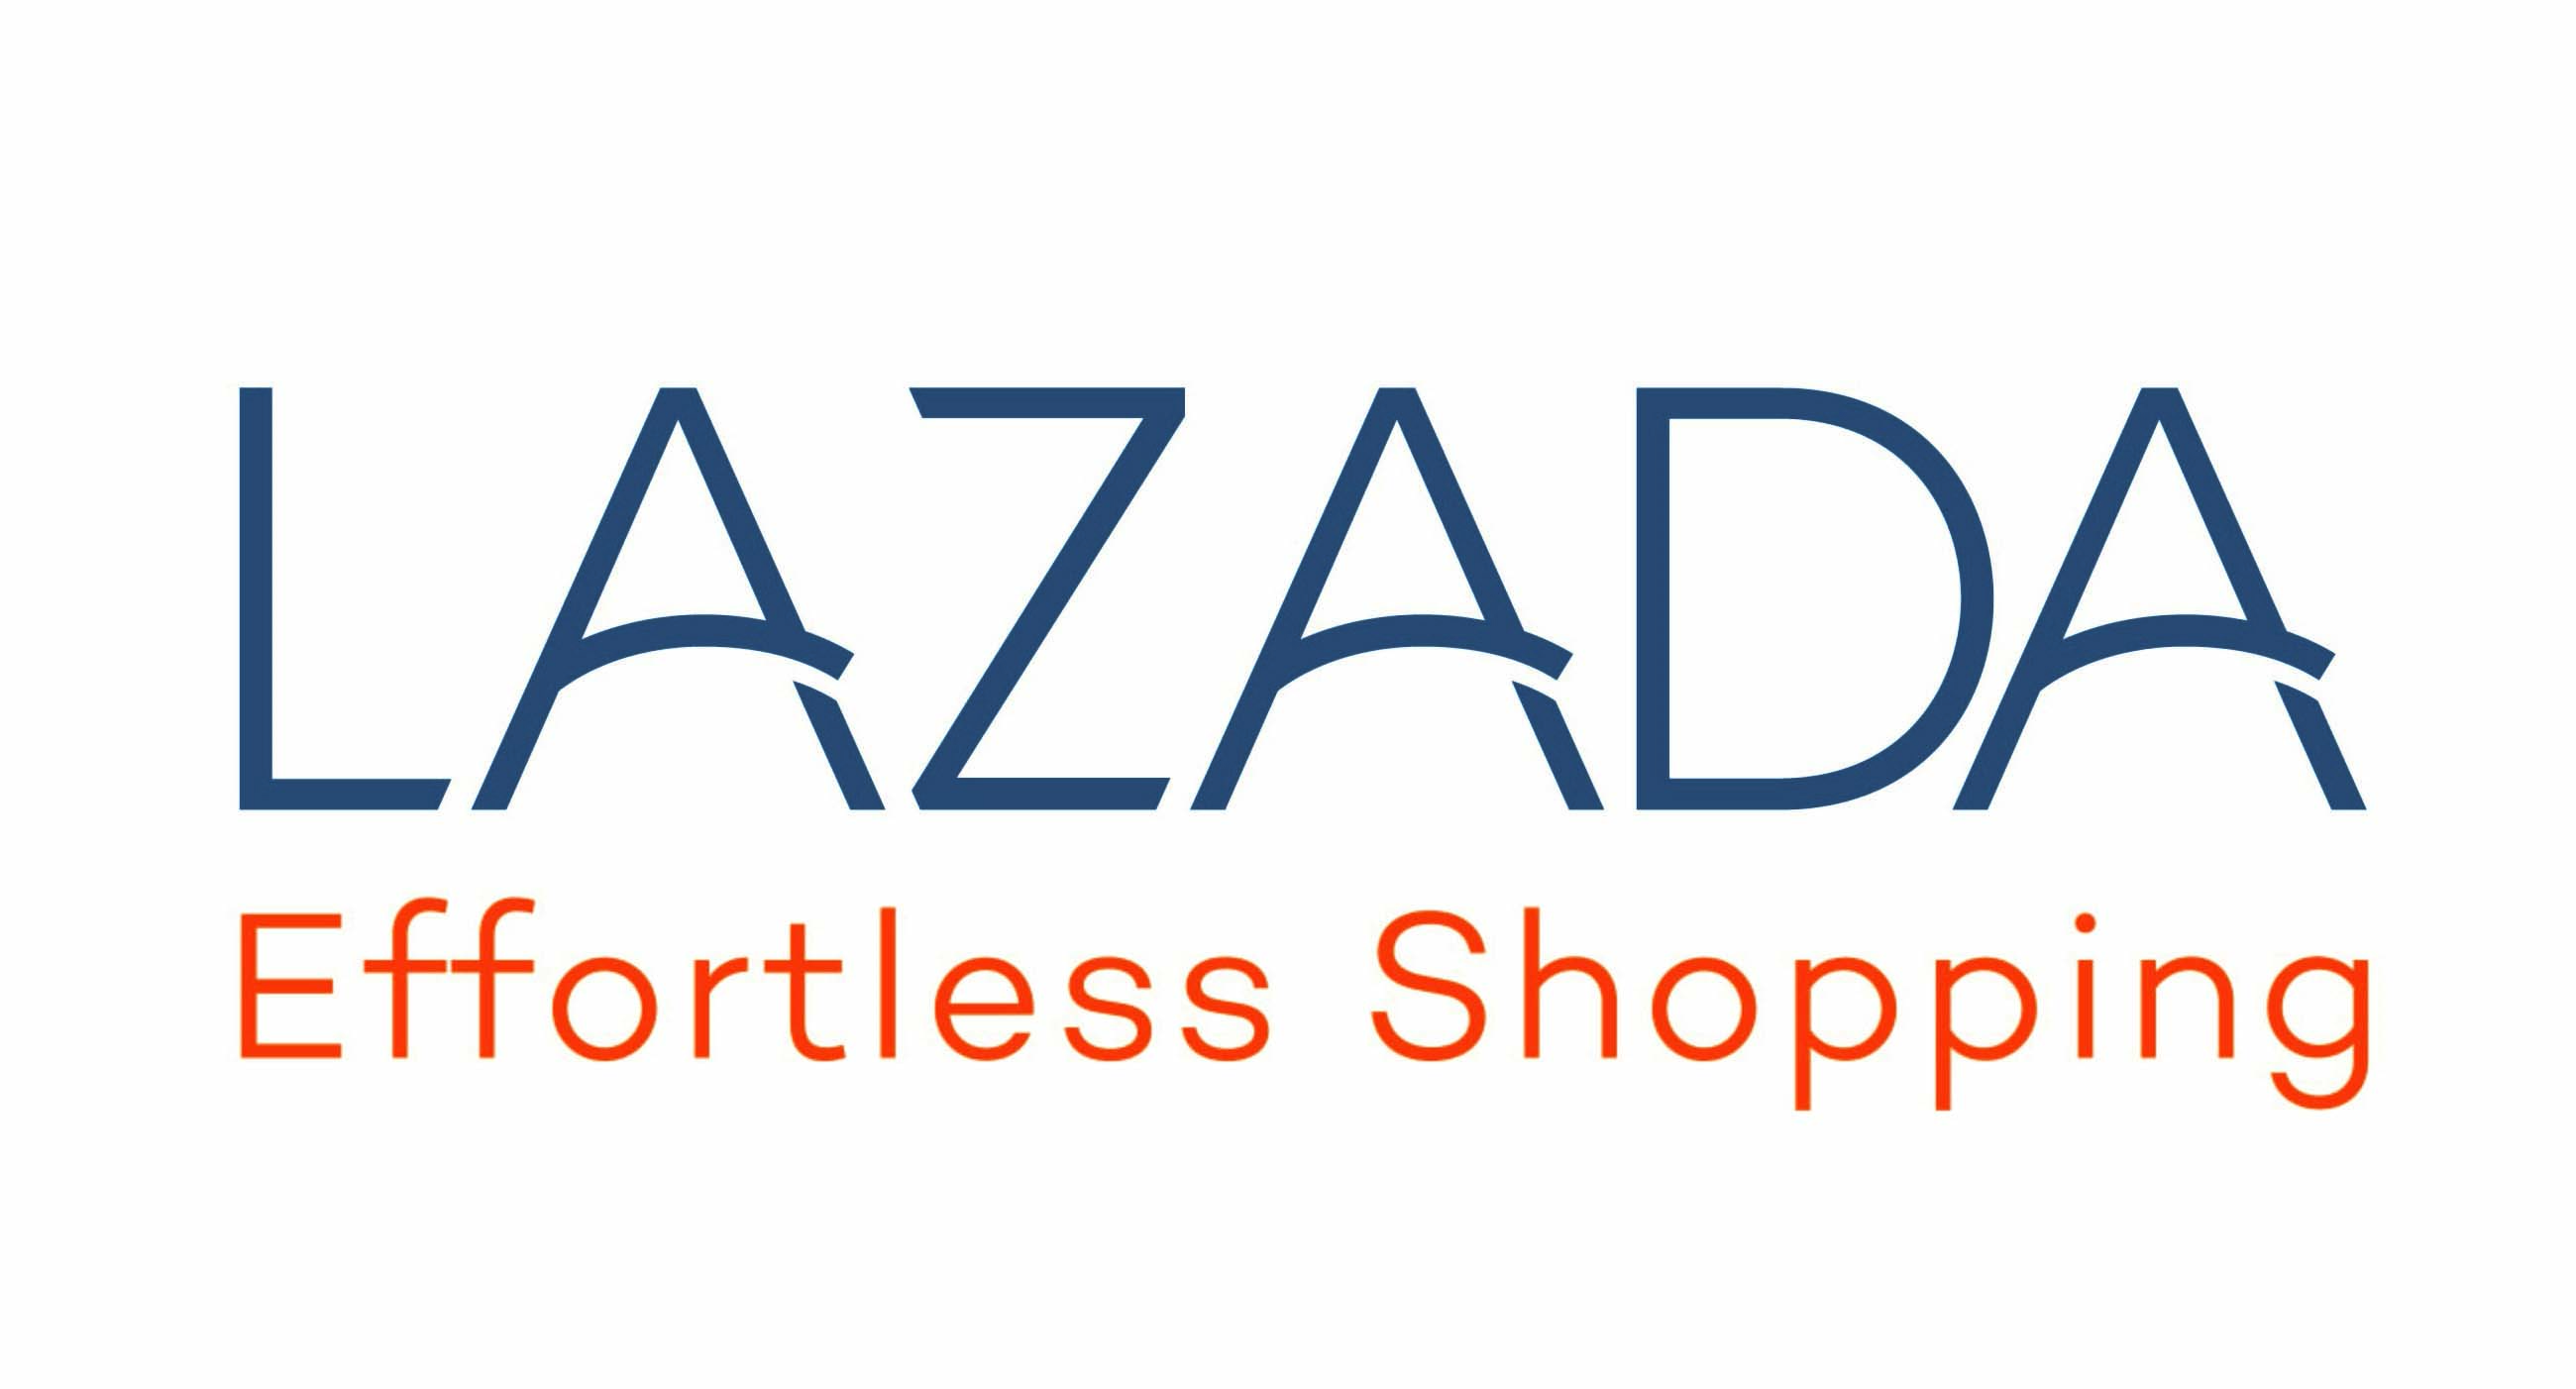 Singapore Outlet Store Lazada | Wydział Cybernetyki